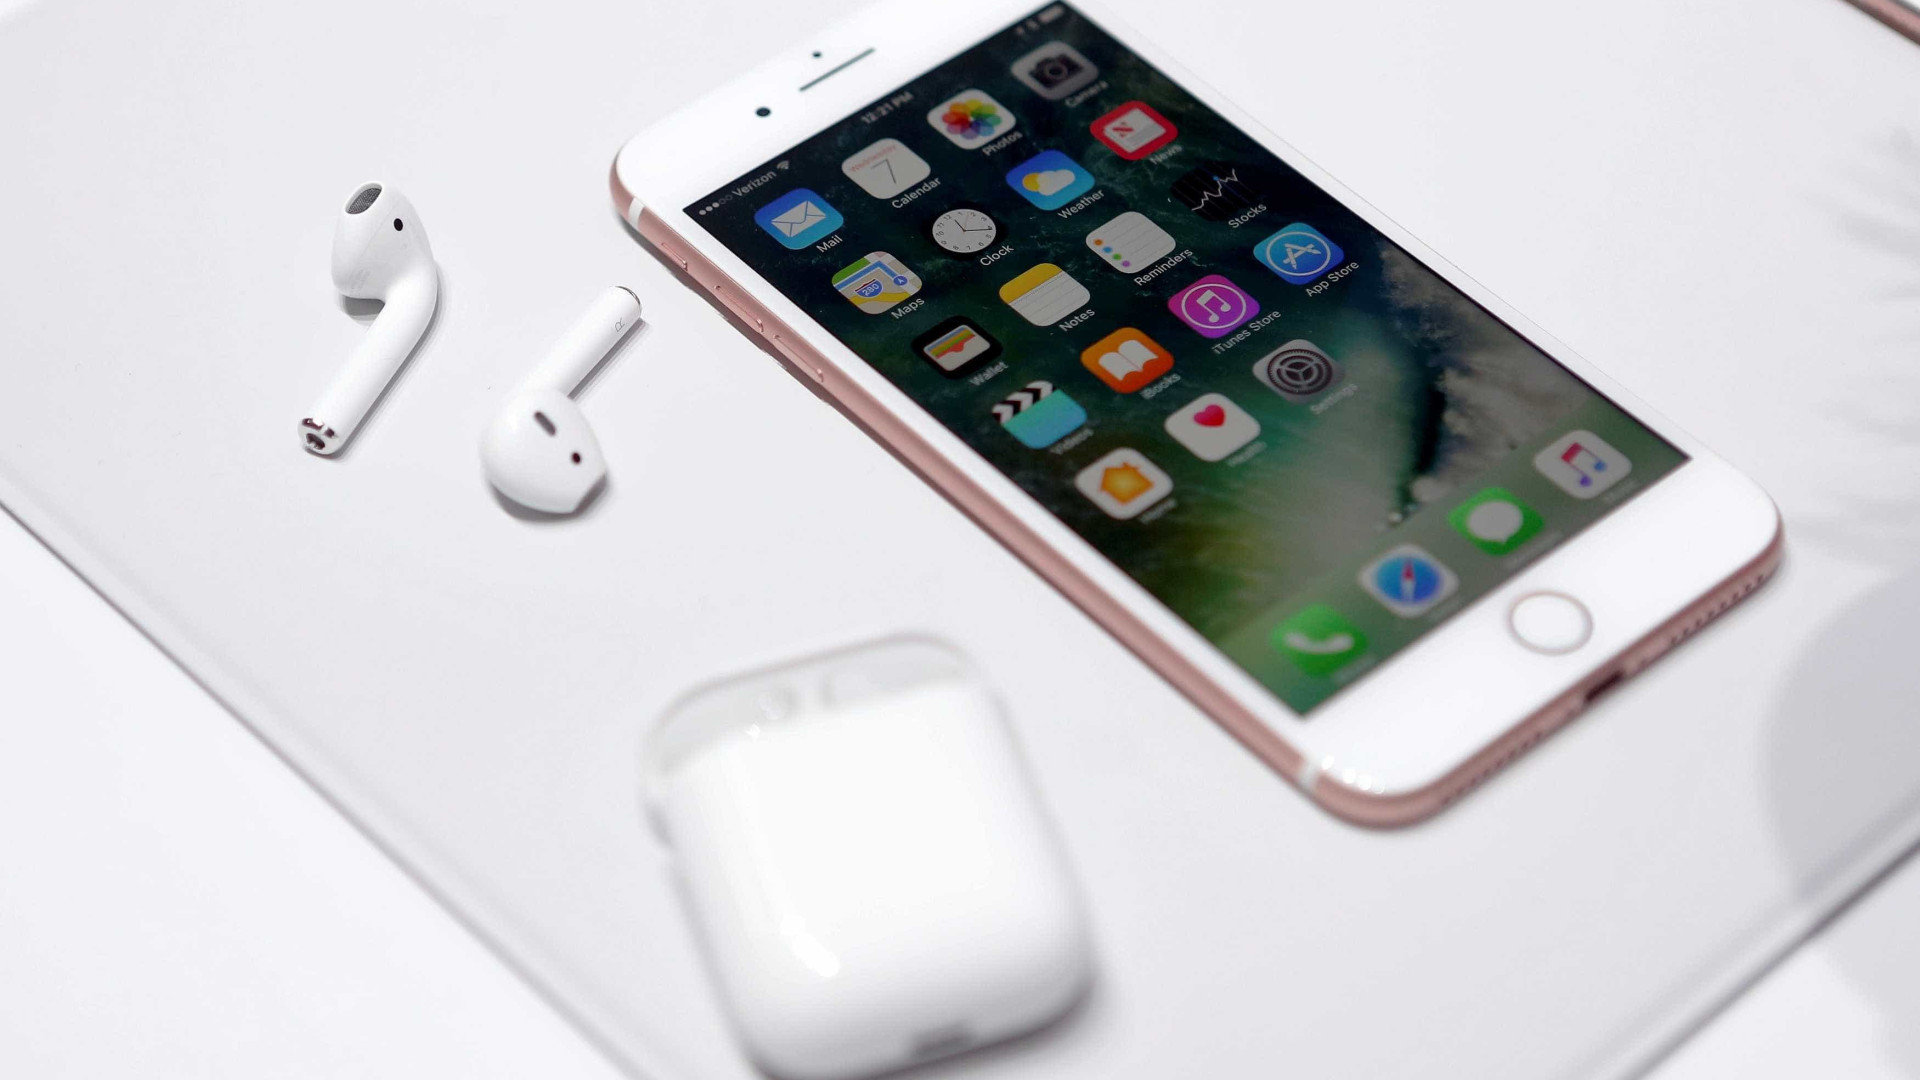 Vendas do iPhone 7 podem reservar 
surpresas para a Apple